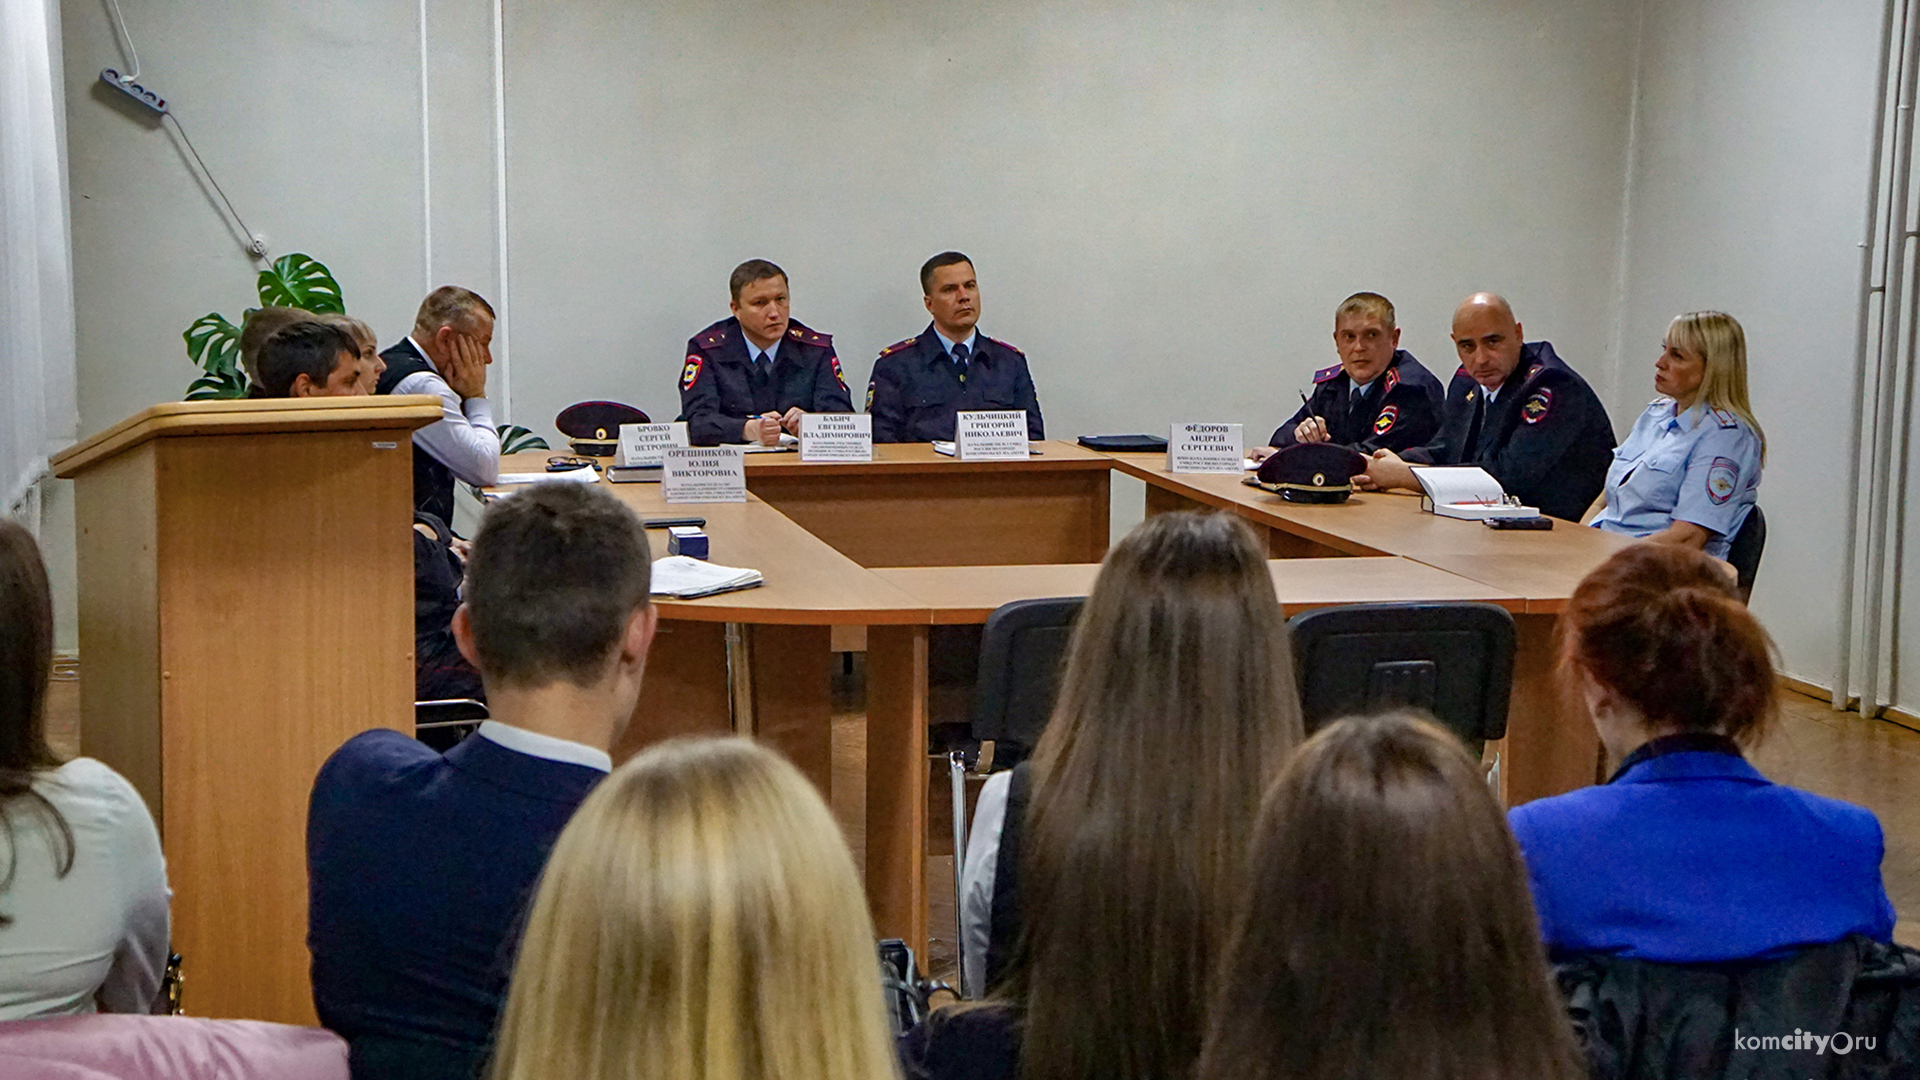 Отдел полиции №2 проведёт завтра общественную приёмную для жителей Комсомольска-на-Амуре